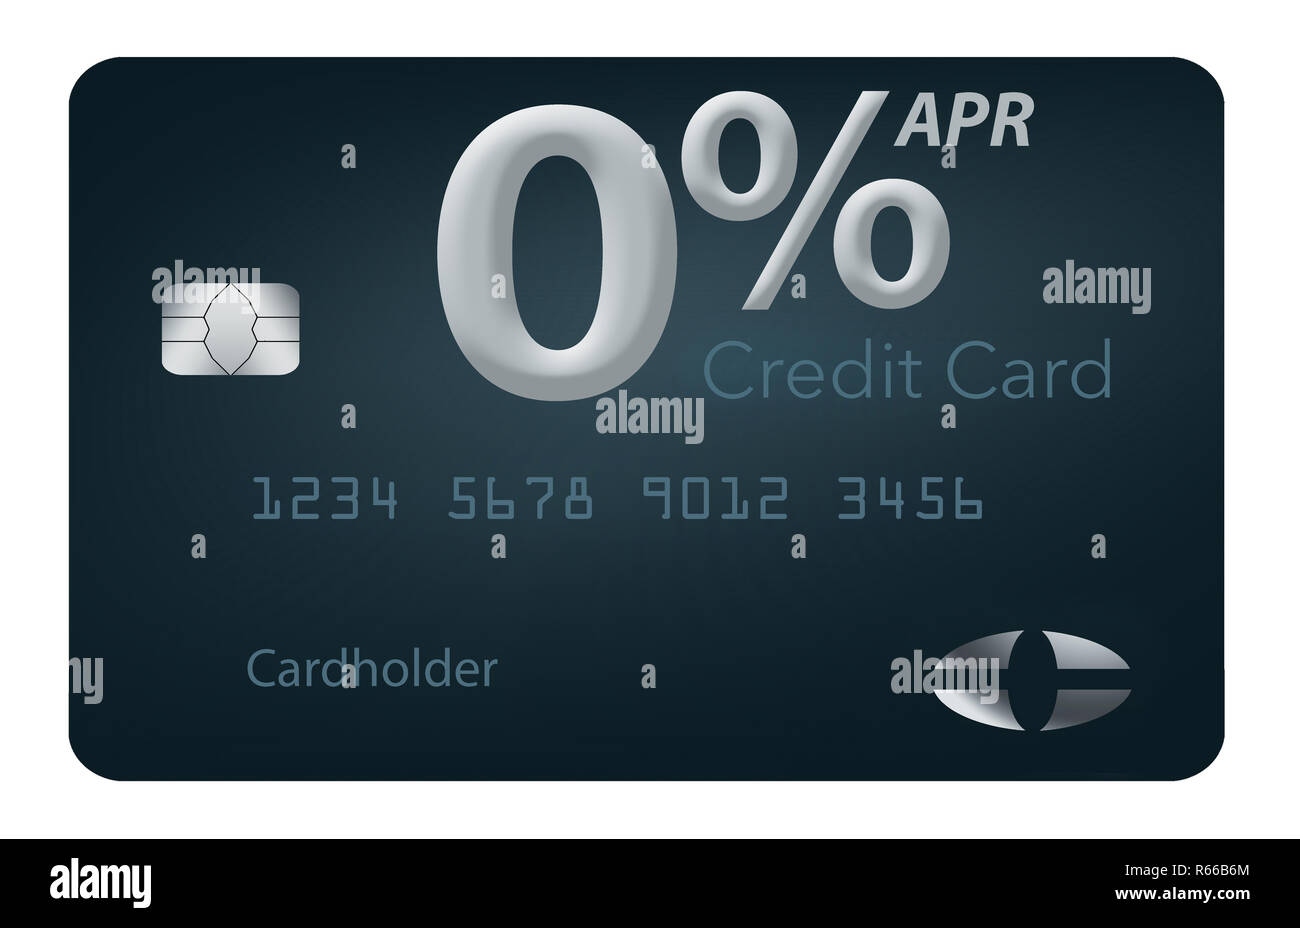 Viele Kreditkarte bietet jetzt auch null Prozent Jahreszins für 12-15 Monate und dieser generischen mock Karte veranschaulicht diese Angebote. Dies ist Stockfoto